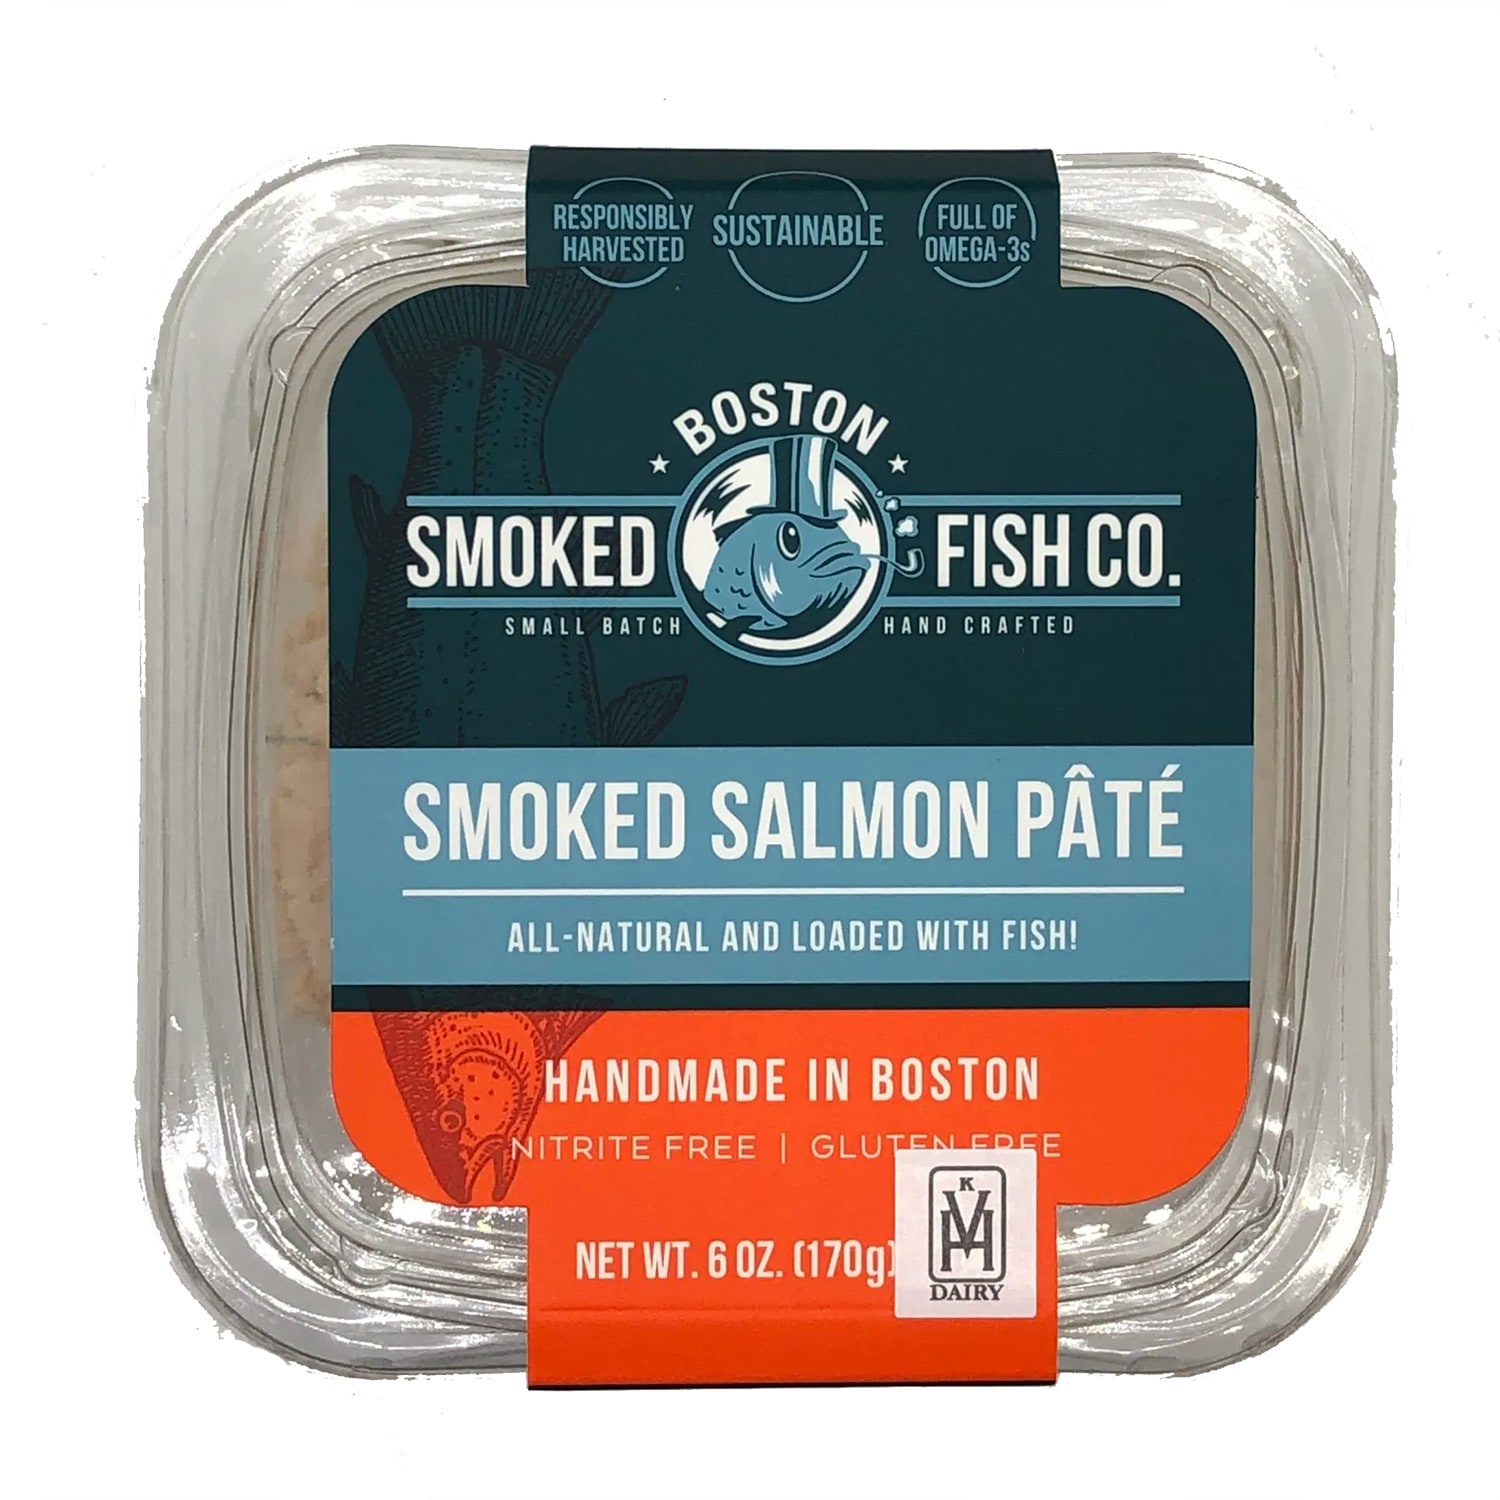 Boston Smoked Fish Co Smoked Salmon Pate